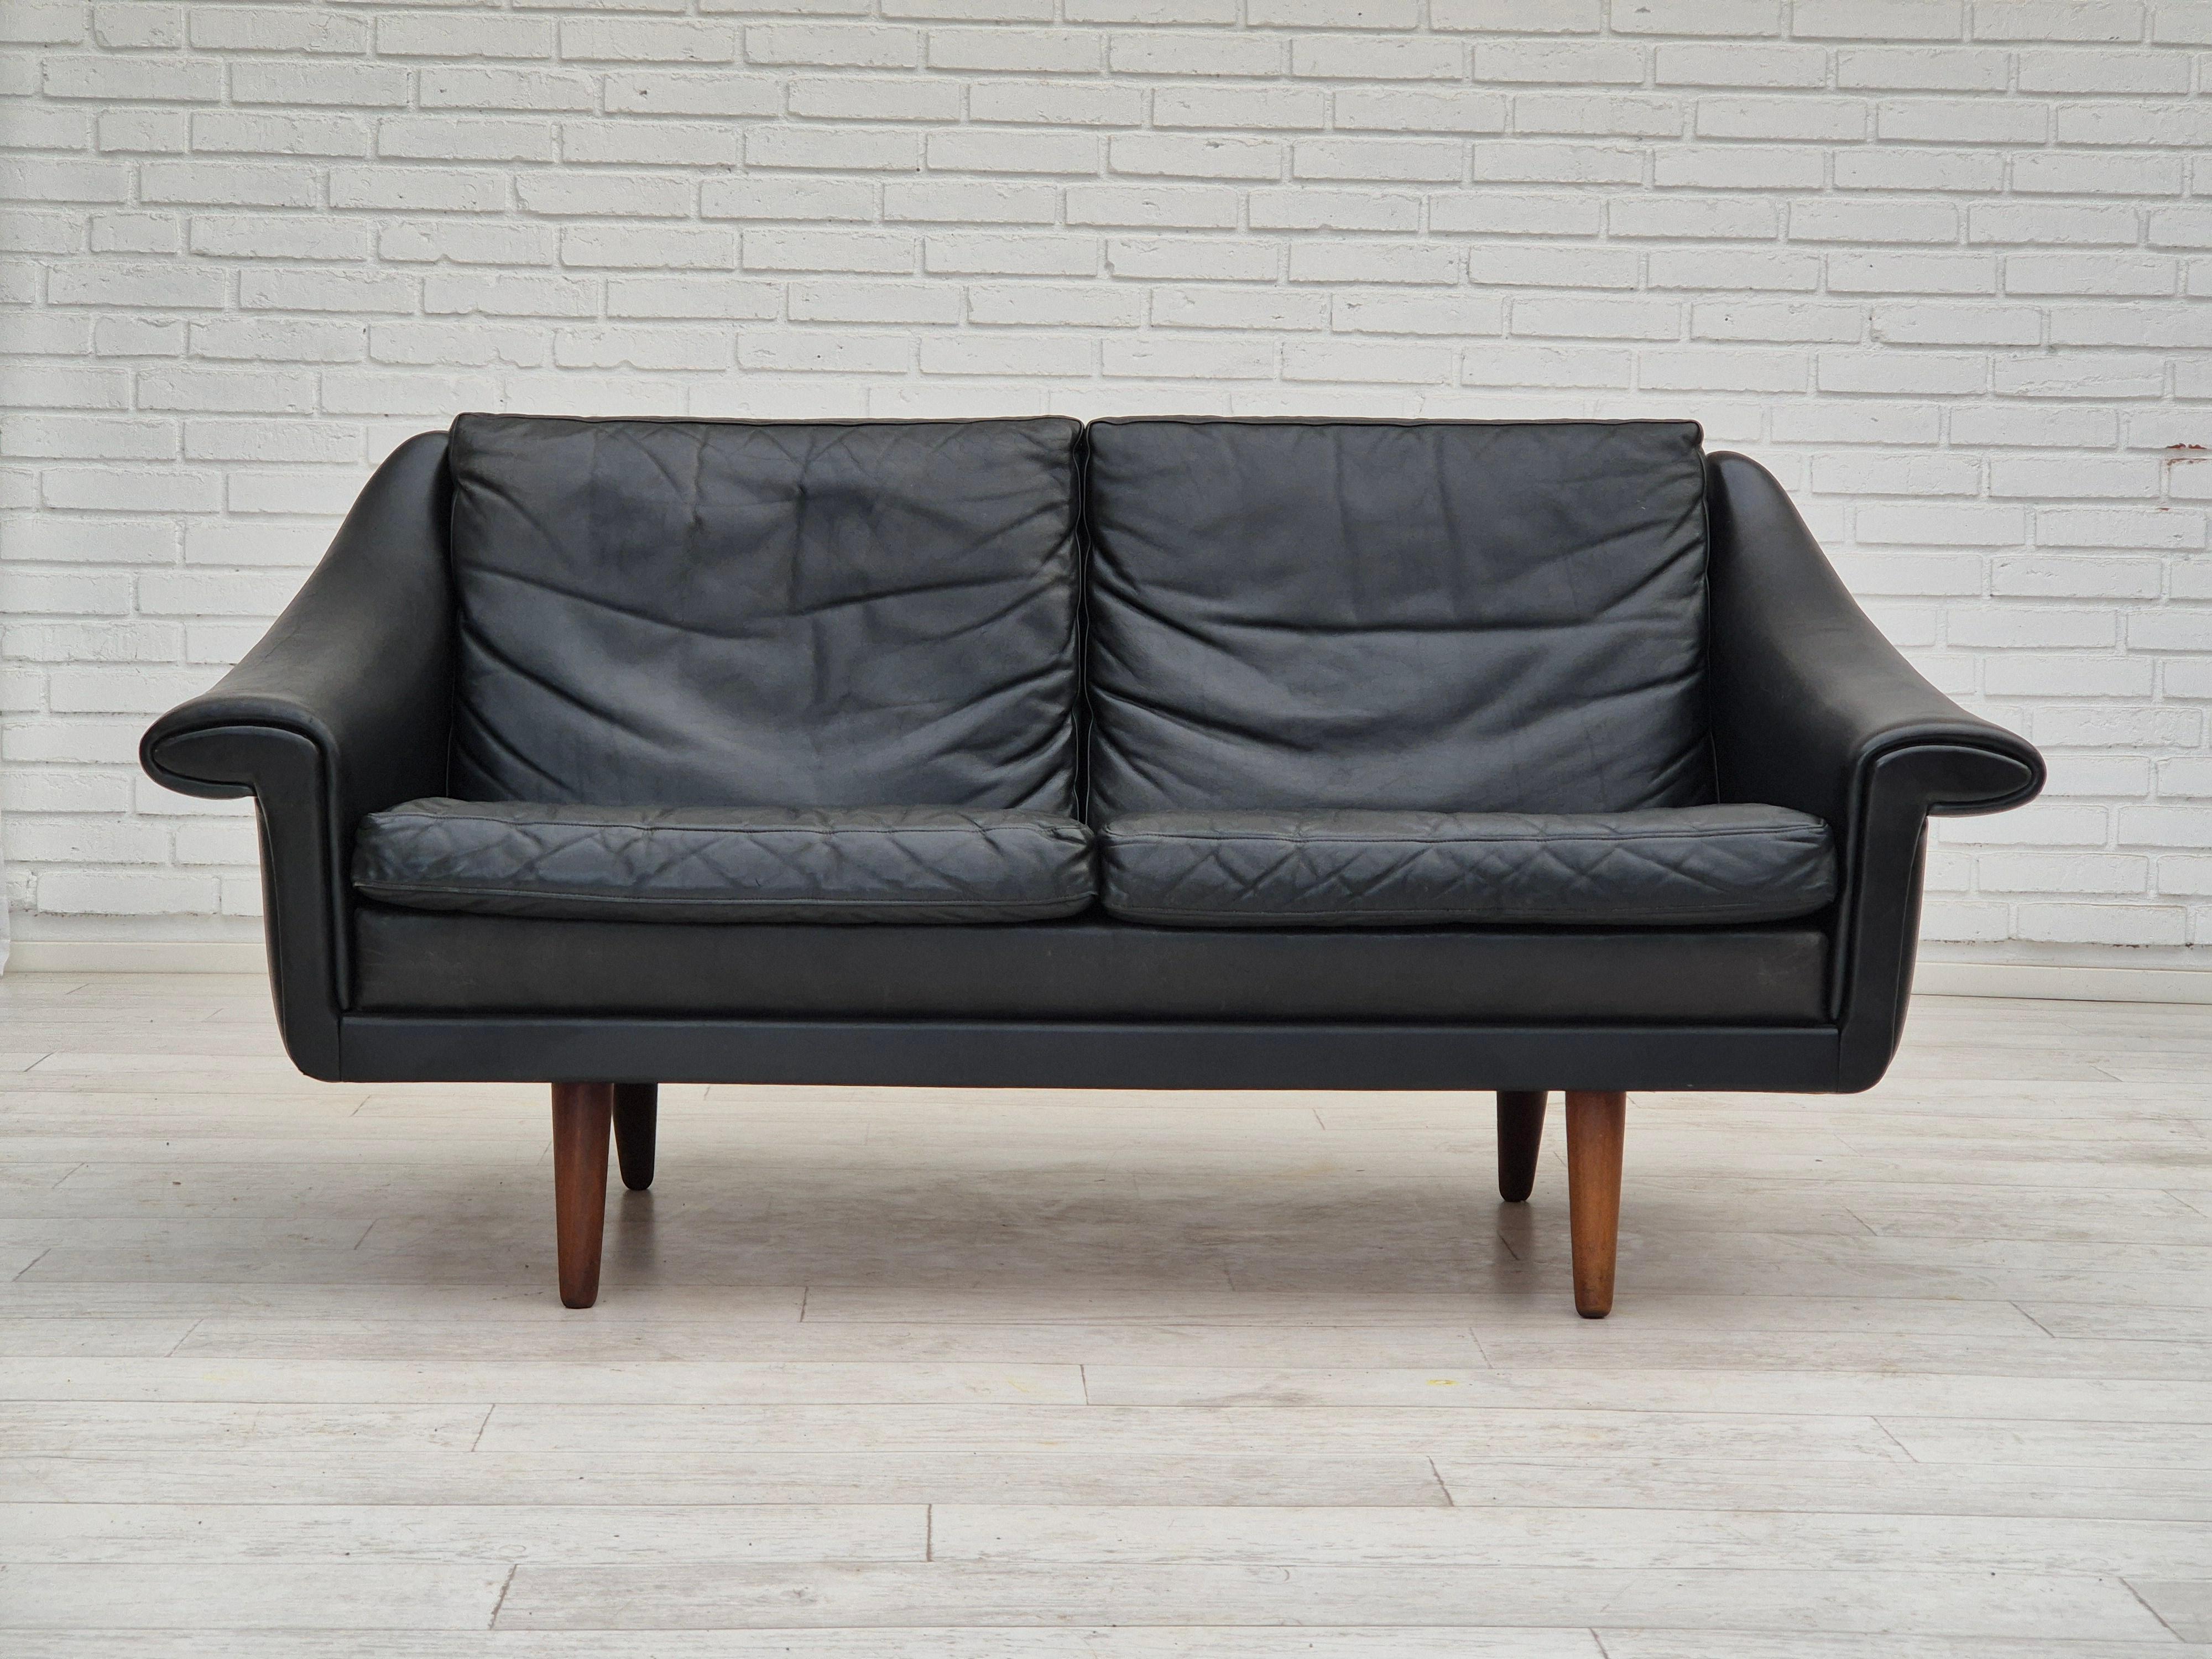 1960s, Danish design by Aage Christiansen for Erhardsen & Andersen, Nykøbing Mors. 2 seater sofa model 